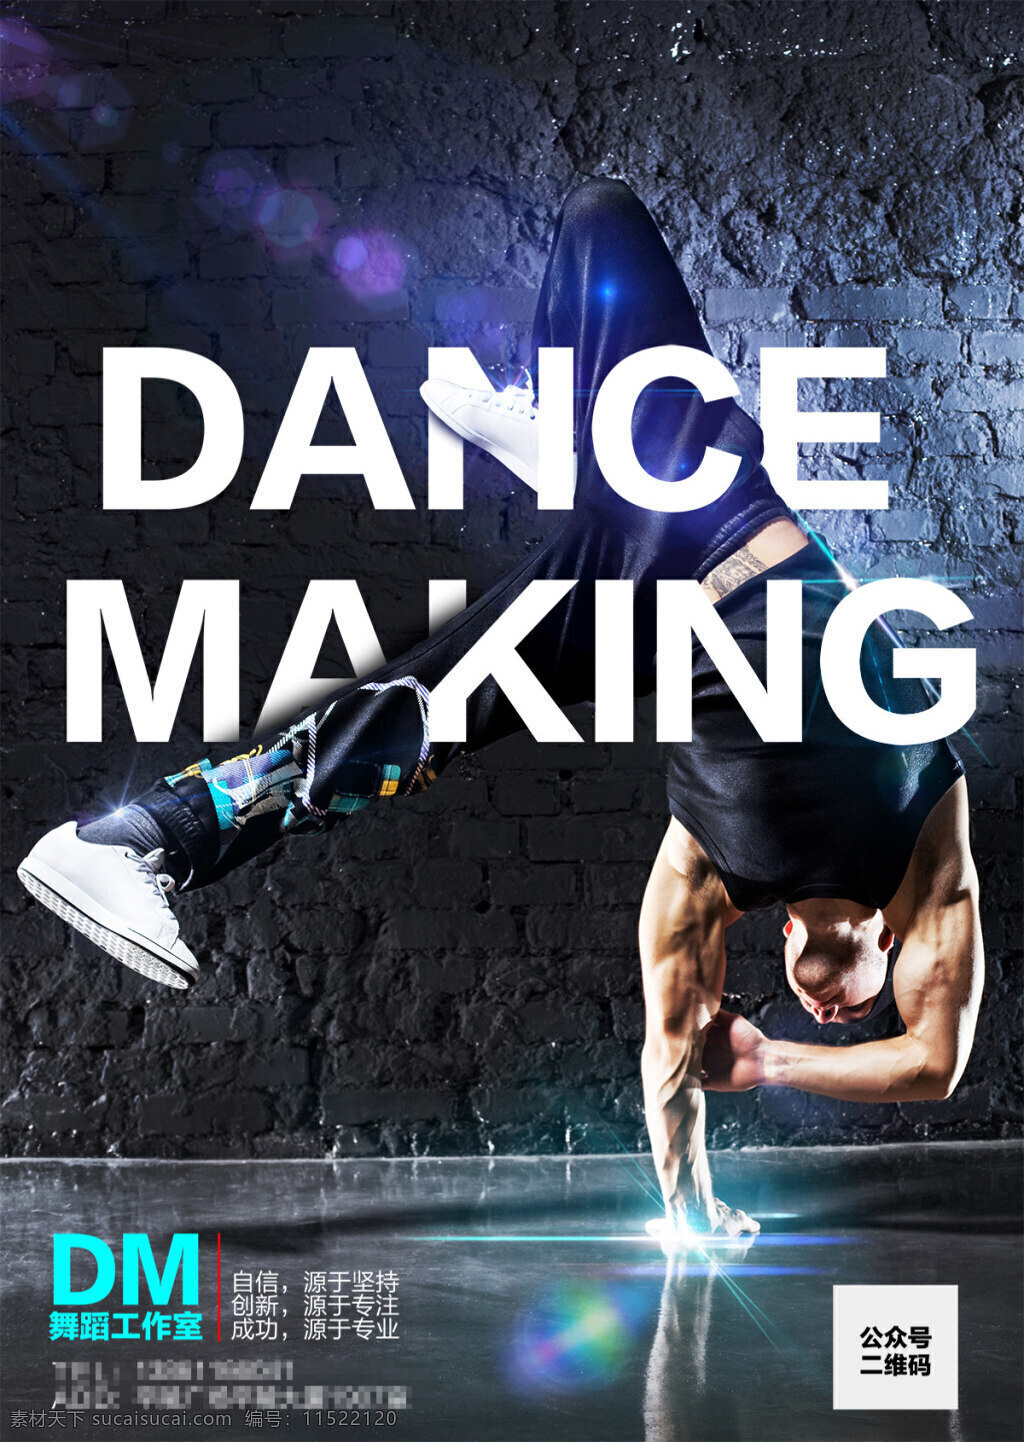 跳舞 舞蹈 工作室 海报 创意海报 宣传海报 产面设计 宣传海报设计 海报素材 广告设计模板 psd素材 黑色